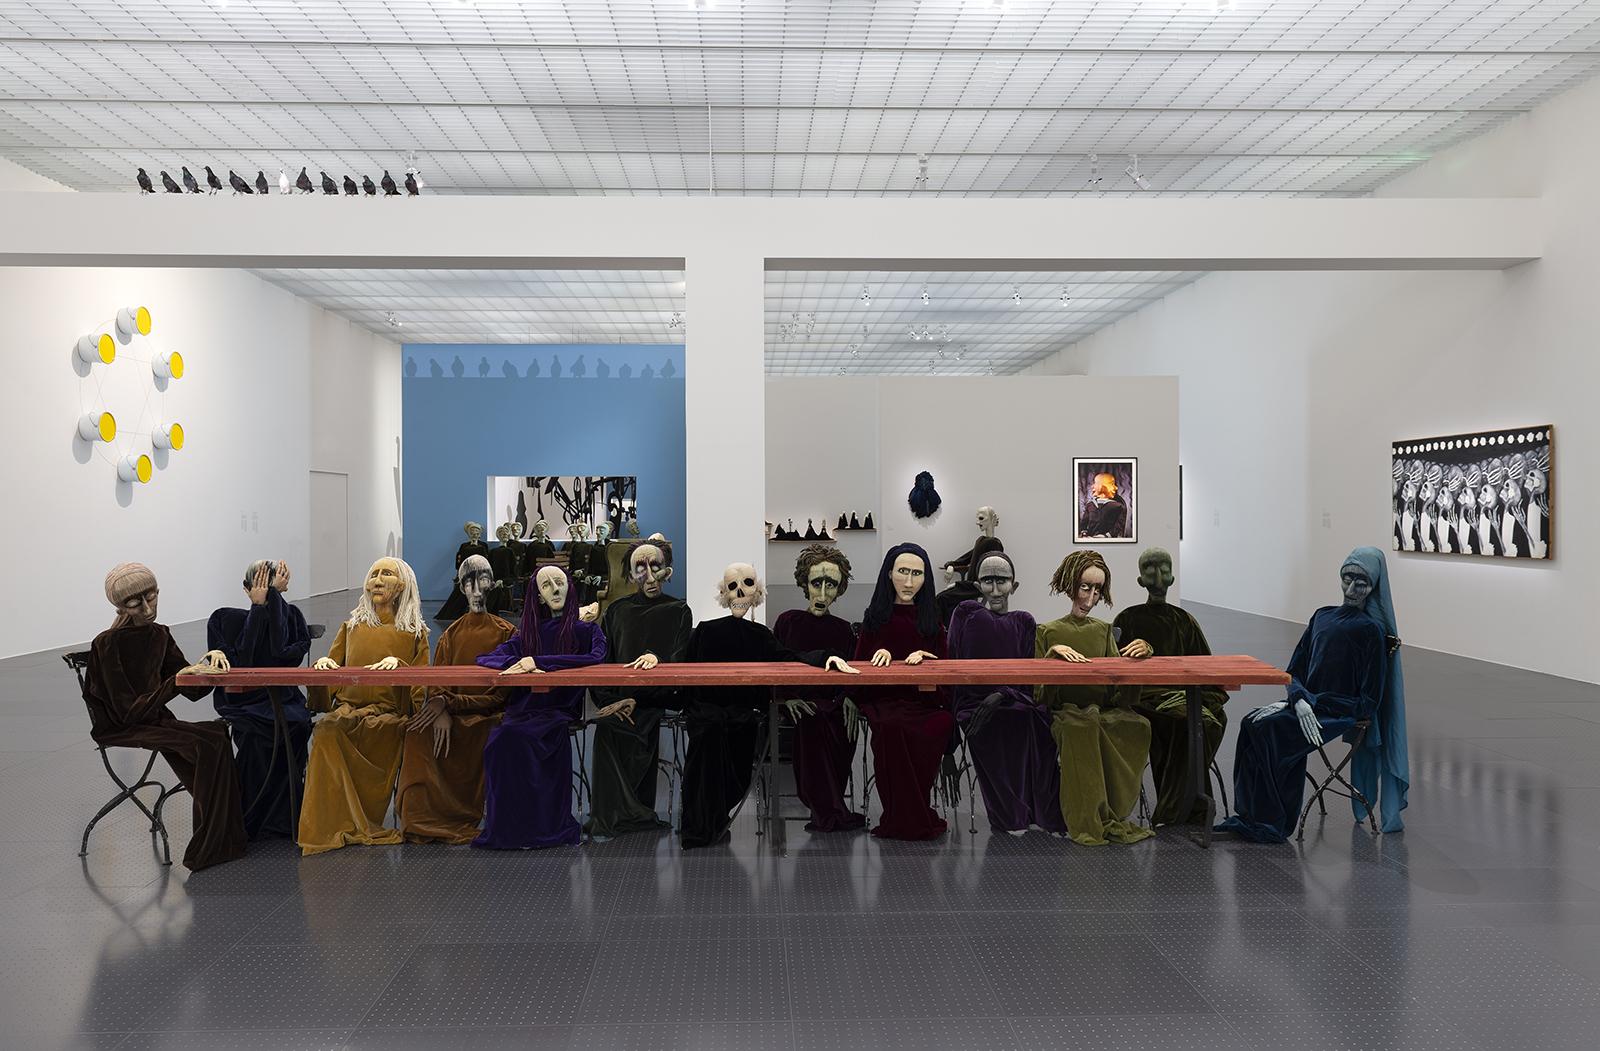 Vue de l'exposition "Le Musée sentimental d’Eva Aeppli" au Centre Pompidou-Metz. Au centre, "La Table", 1965-1967. [ADAGP, Paris, 2022/Centre Pompidou-Metz - Marc Domage]